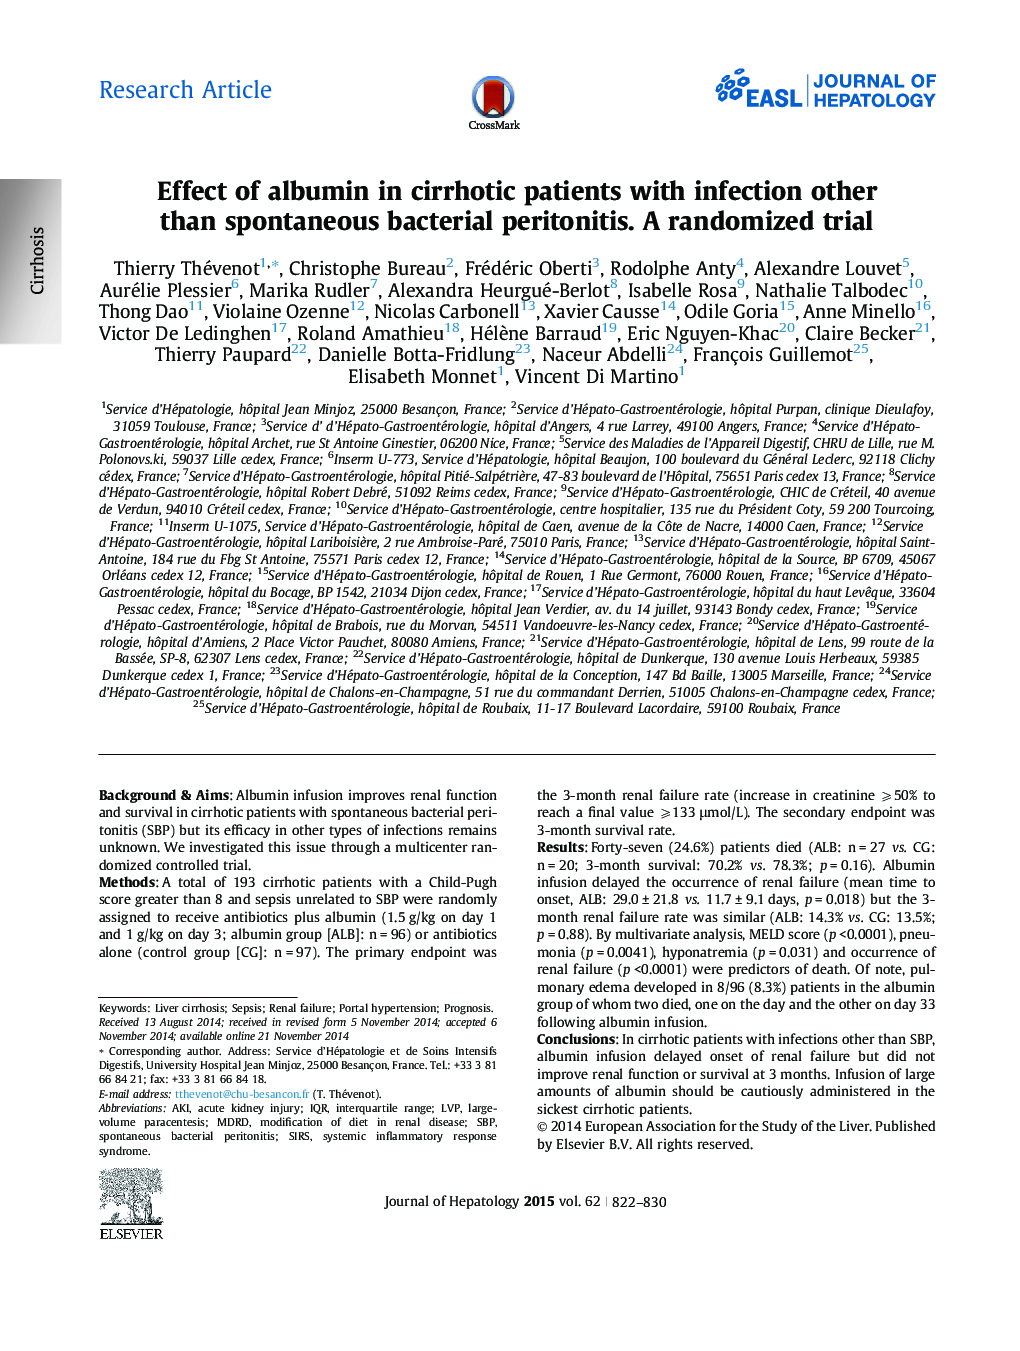 مقدمه اثر آلبومین در بیماران مبتلا به سیروز با عفونت به غیر از پریتونیت باکتریایی خودبه خودی. یک آزمایش تصادفی 